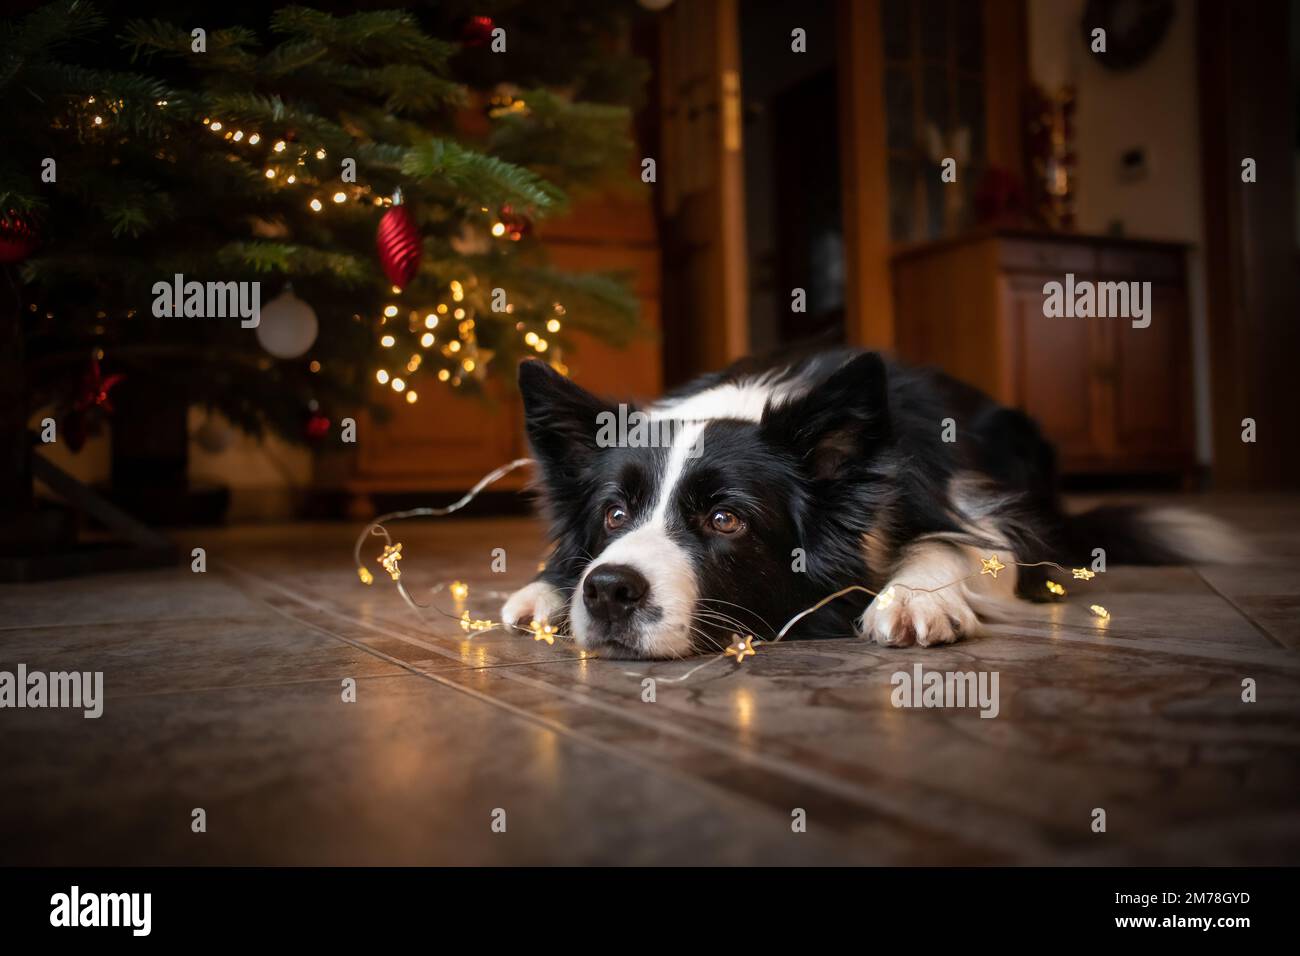 Border Collie sdraiato sul pavimento con luci festive. Carino cane bianco e nero al coperto con albero di Natale. Foto Stock